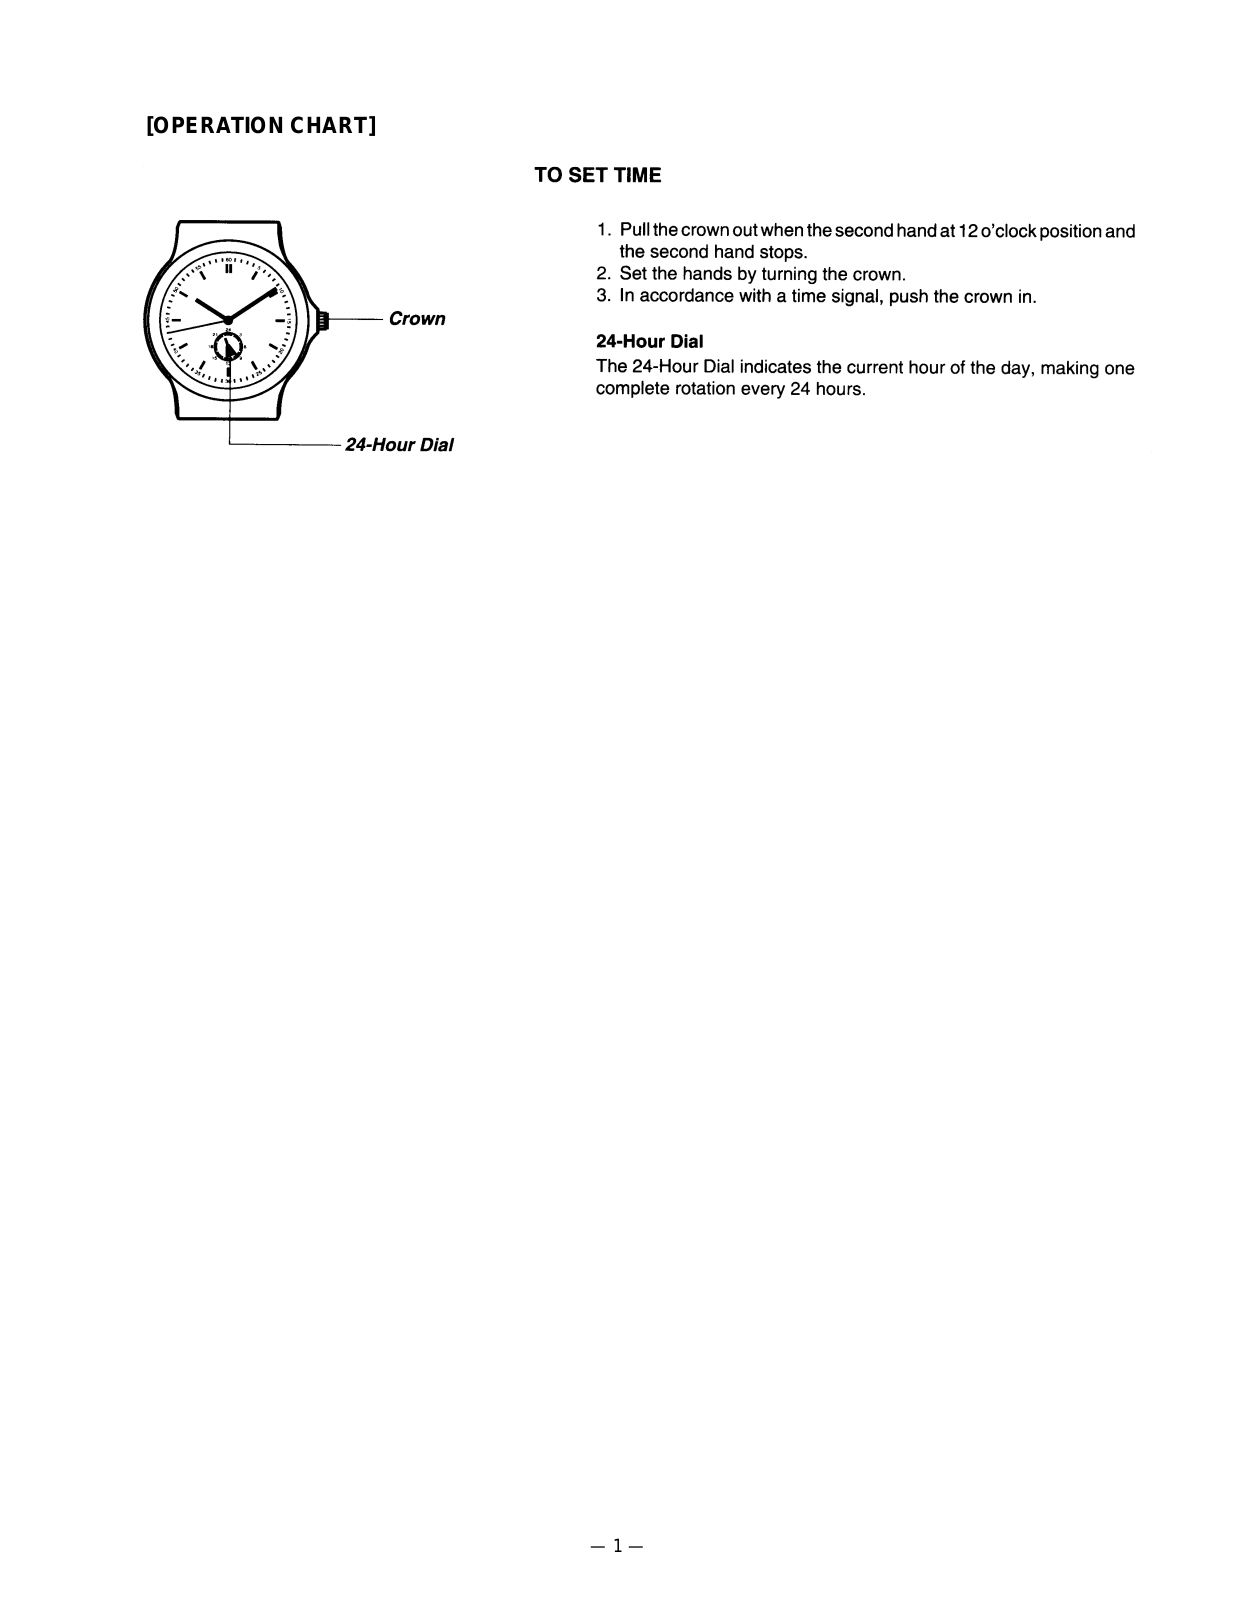 Casio 1303 Owner's Manual